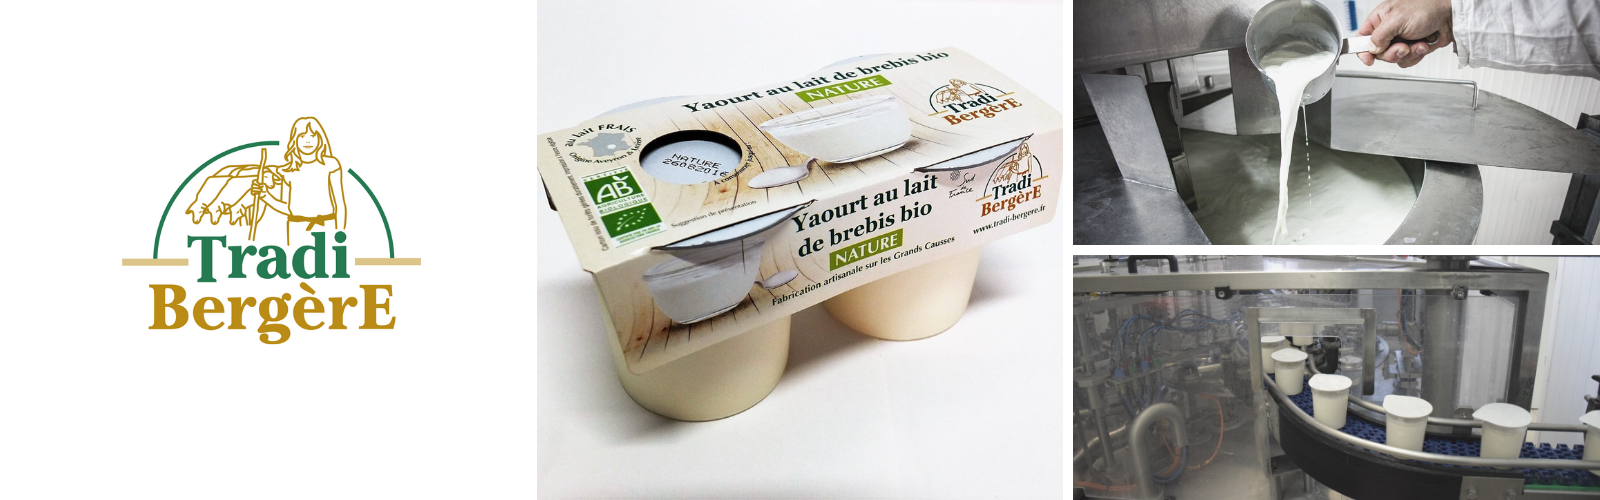 Visite gratuite de l'atelier de transformation de yaourts au lait de brebis bio